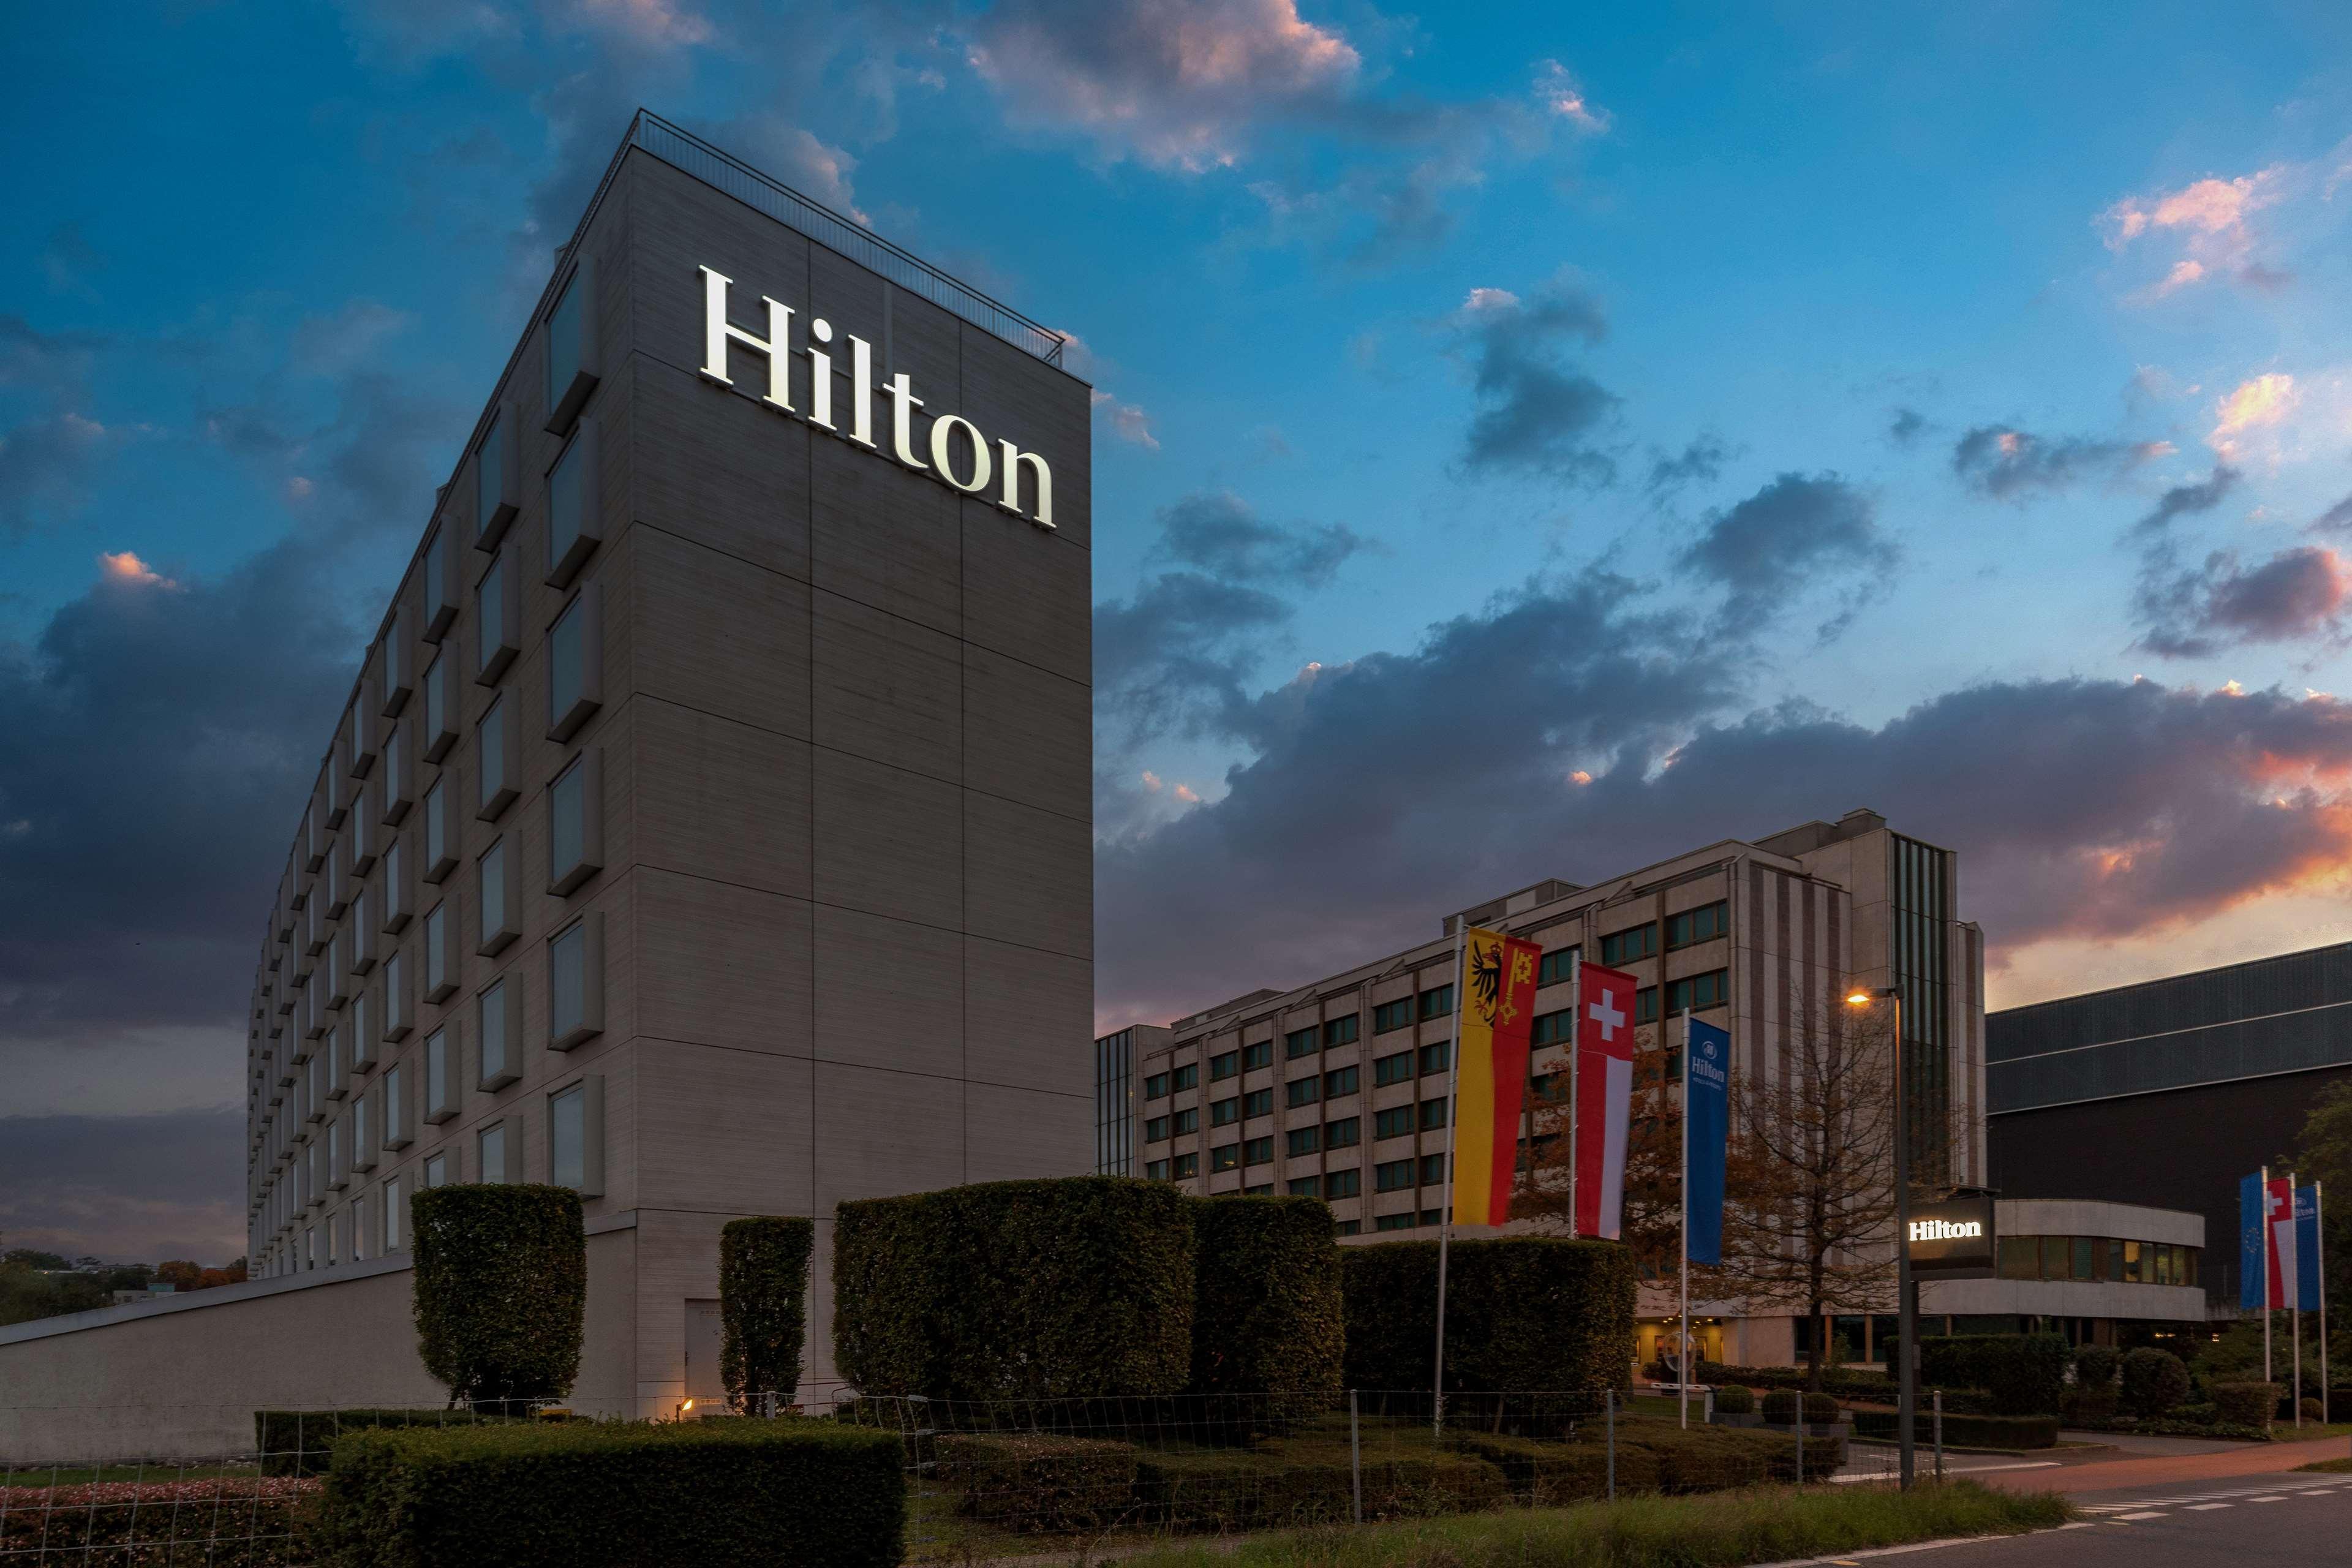 Hilton Geneva Hotel & Conference Centre